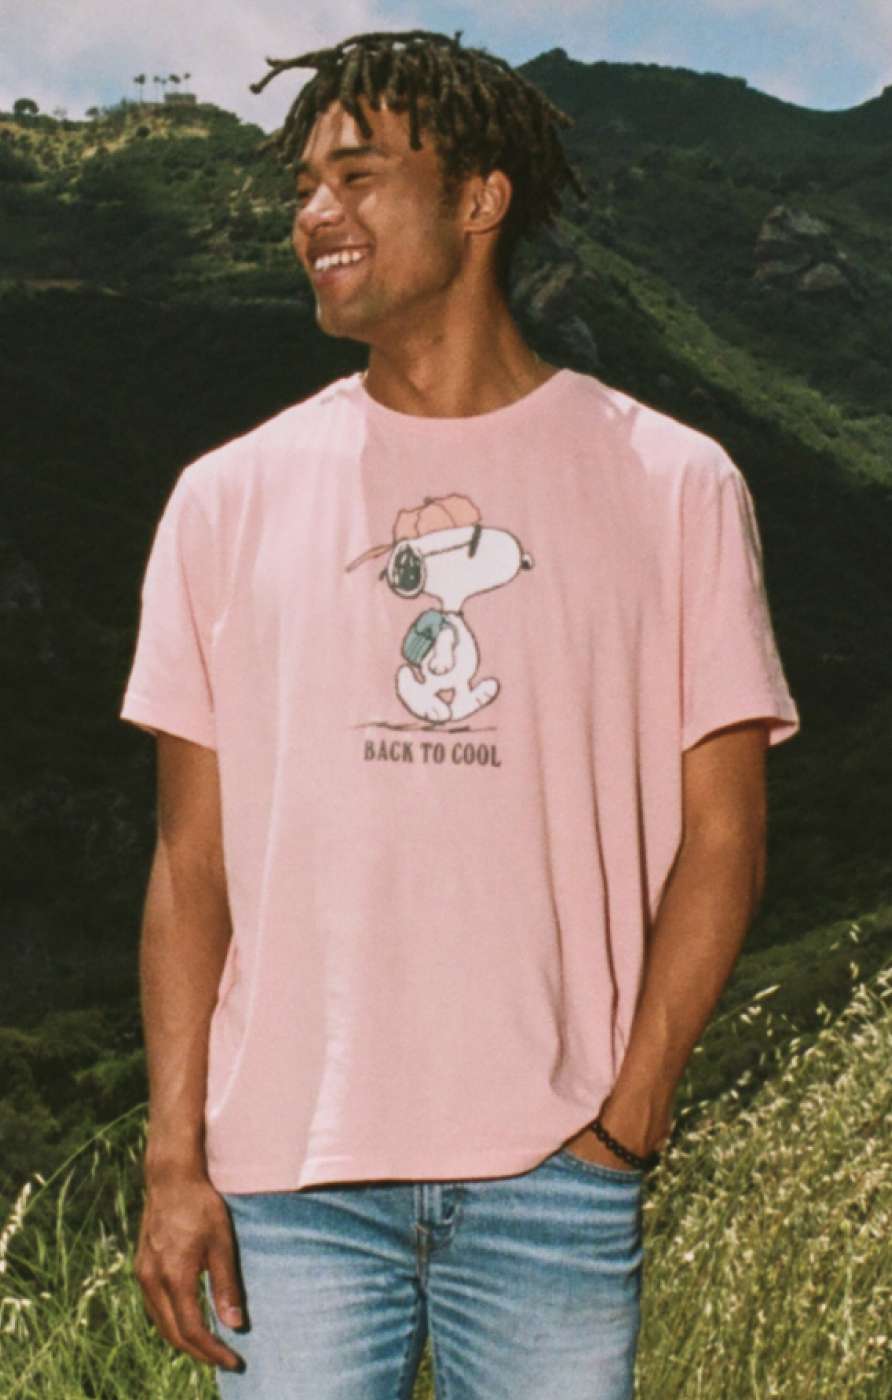 Modelo con t-shirt rosada con gráfico